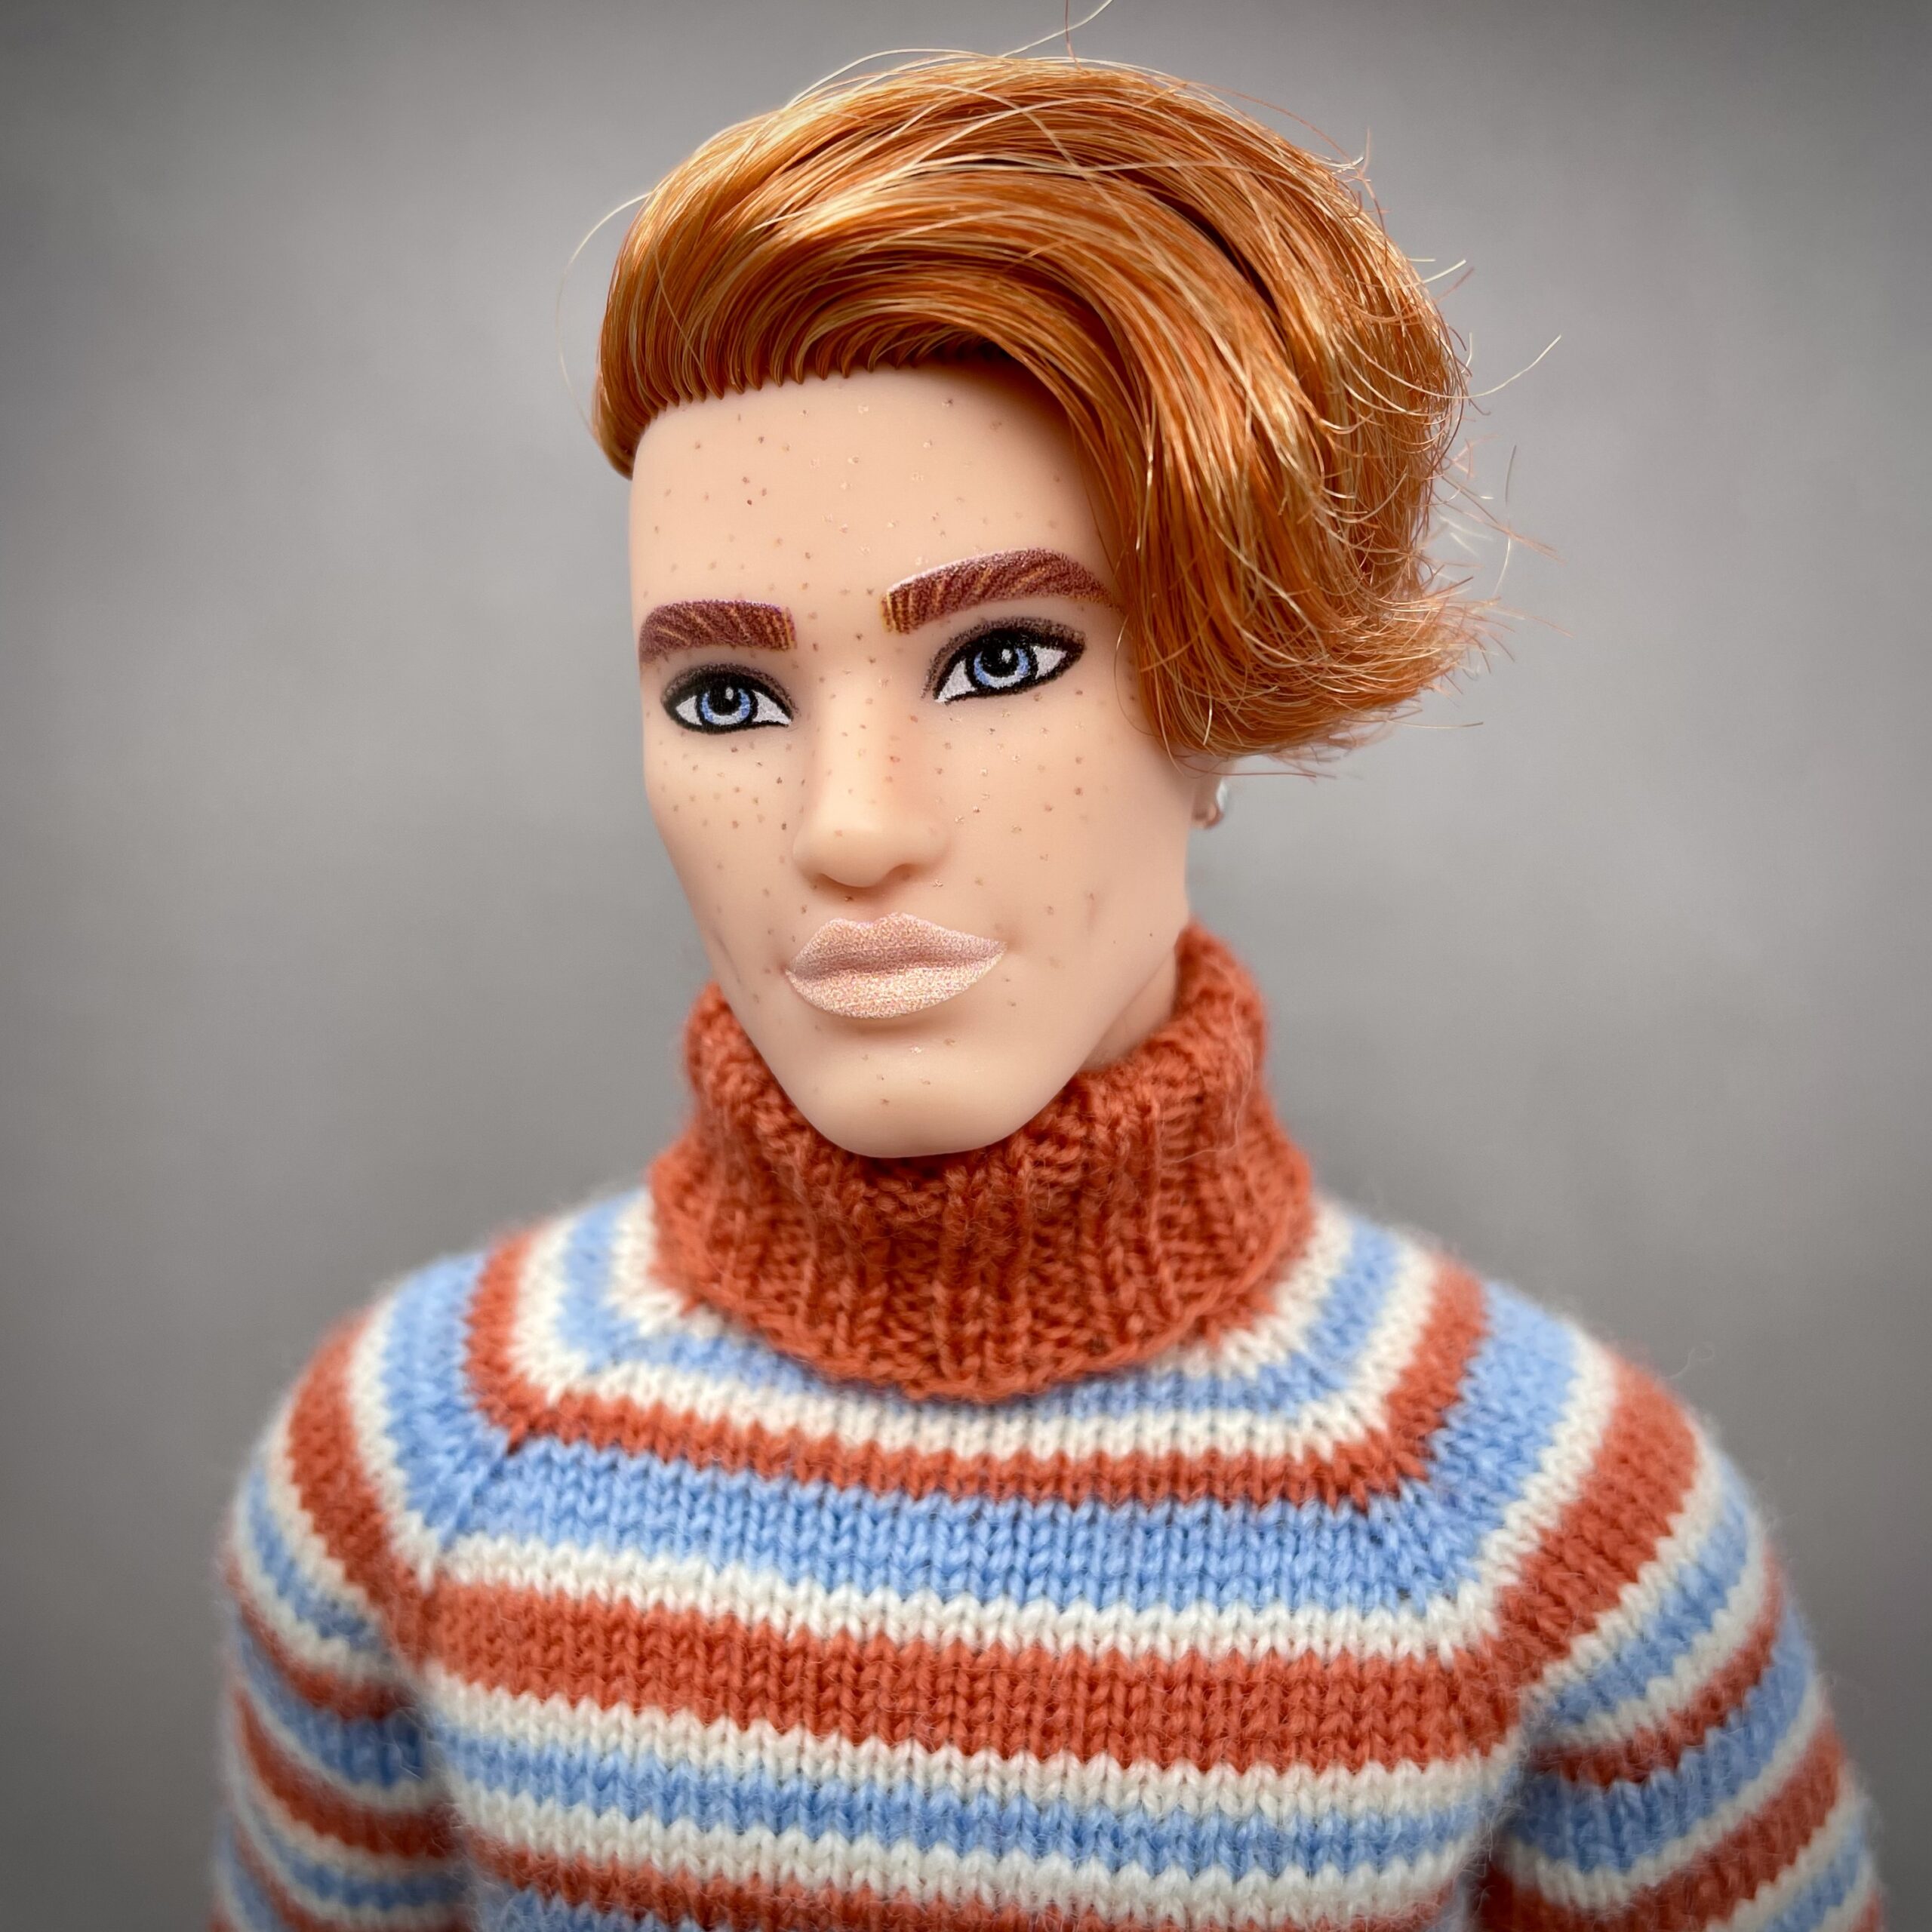 20+ Ken Doll Knitting Patterns